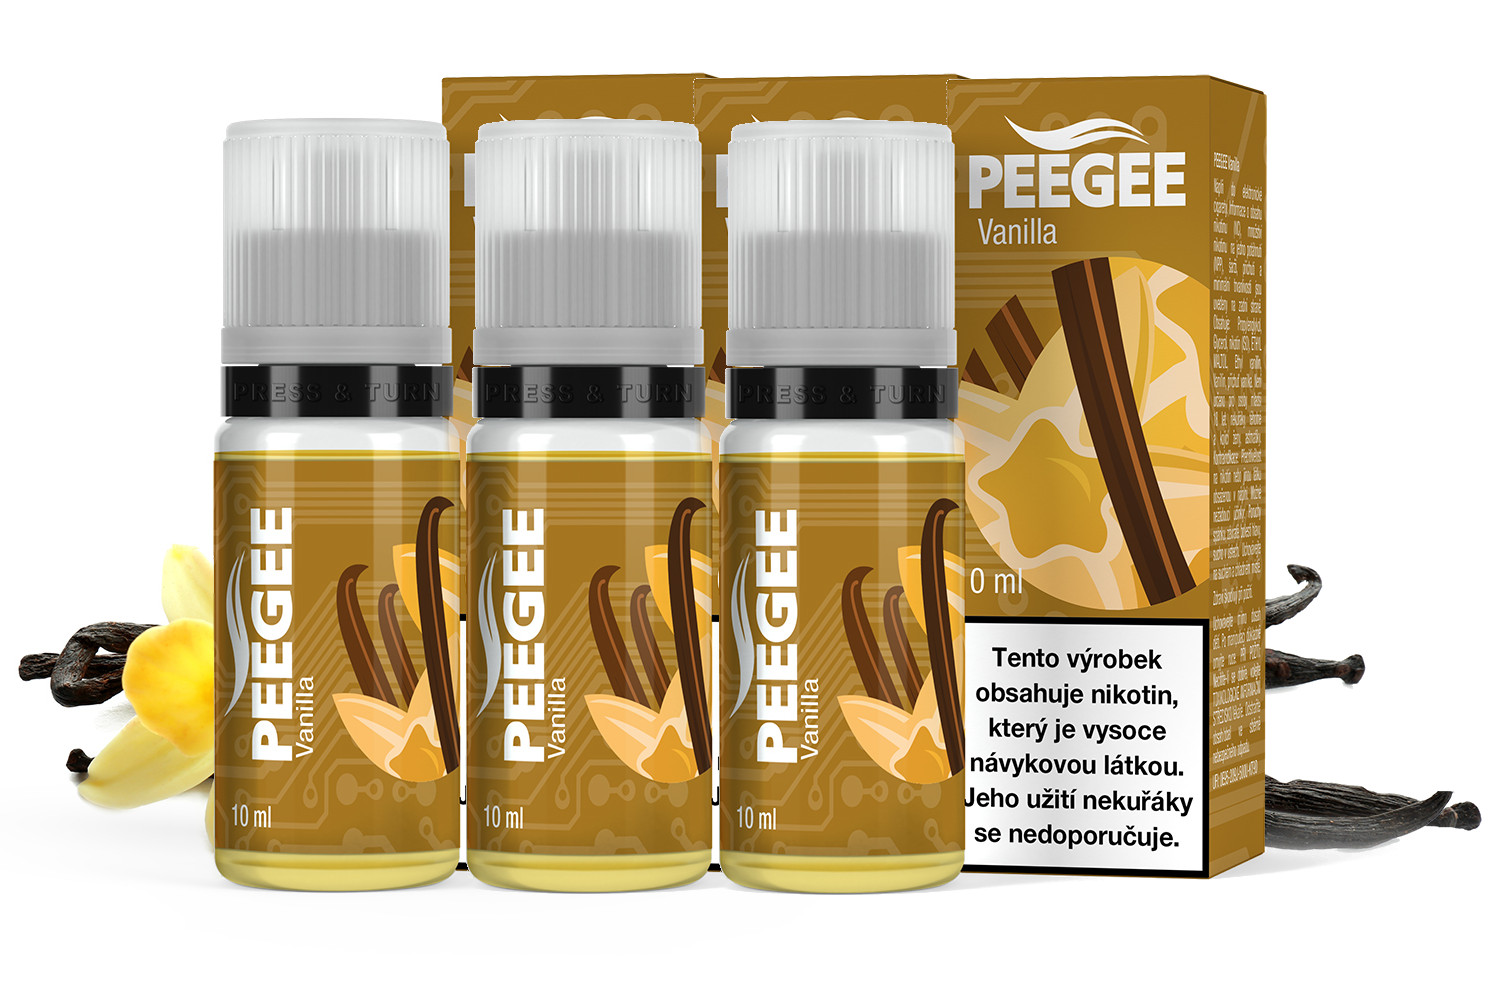 PEEGEE - Vanilka (Vanilla) 3x10ml Obsah nikotinu: 6mg